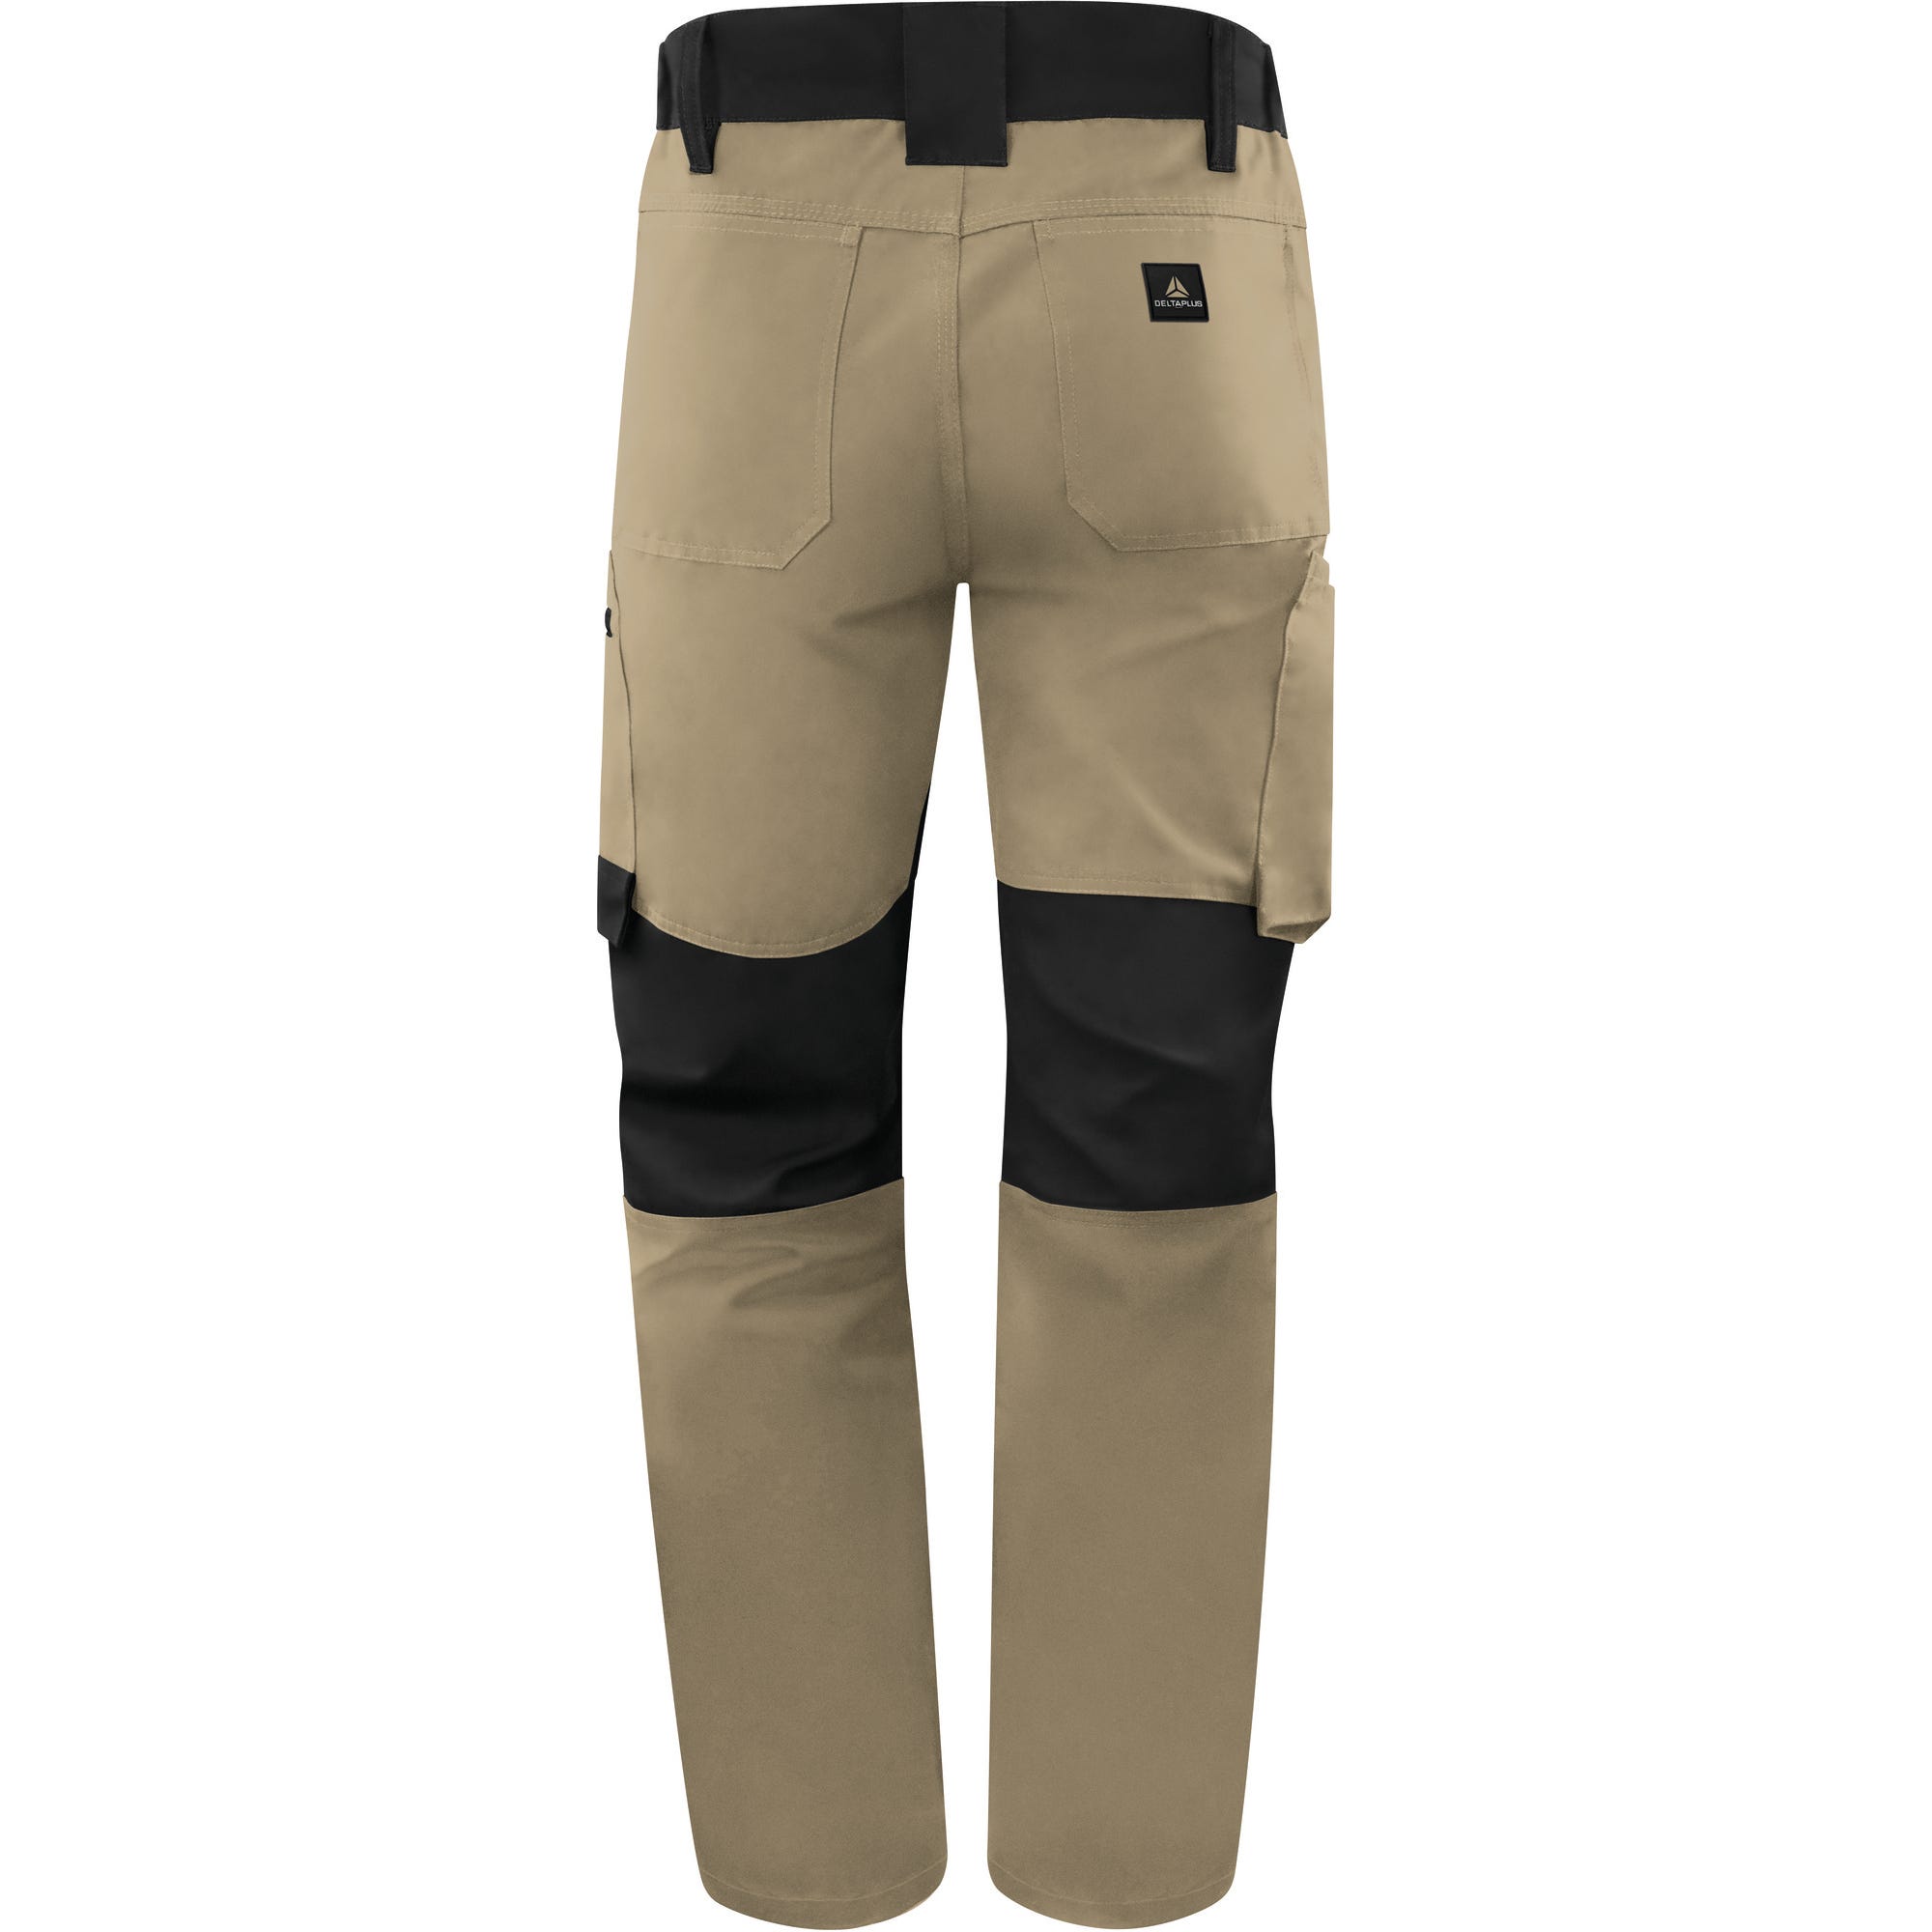 Pantalon de travail Gris/Noir T.XL M5PA3 - DELTA PLUS 0